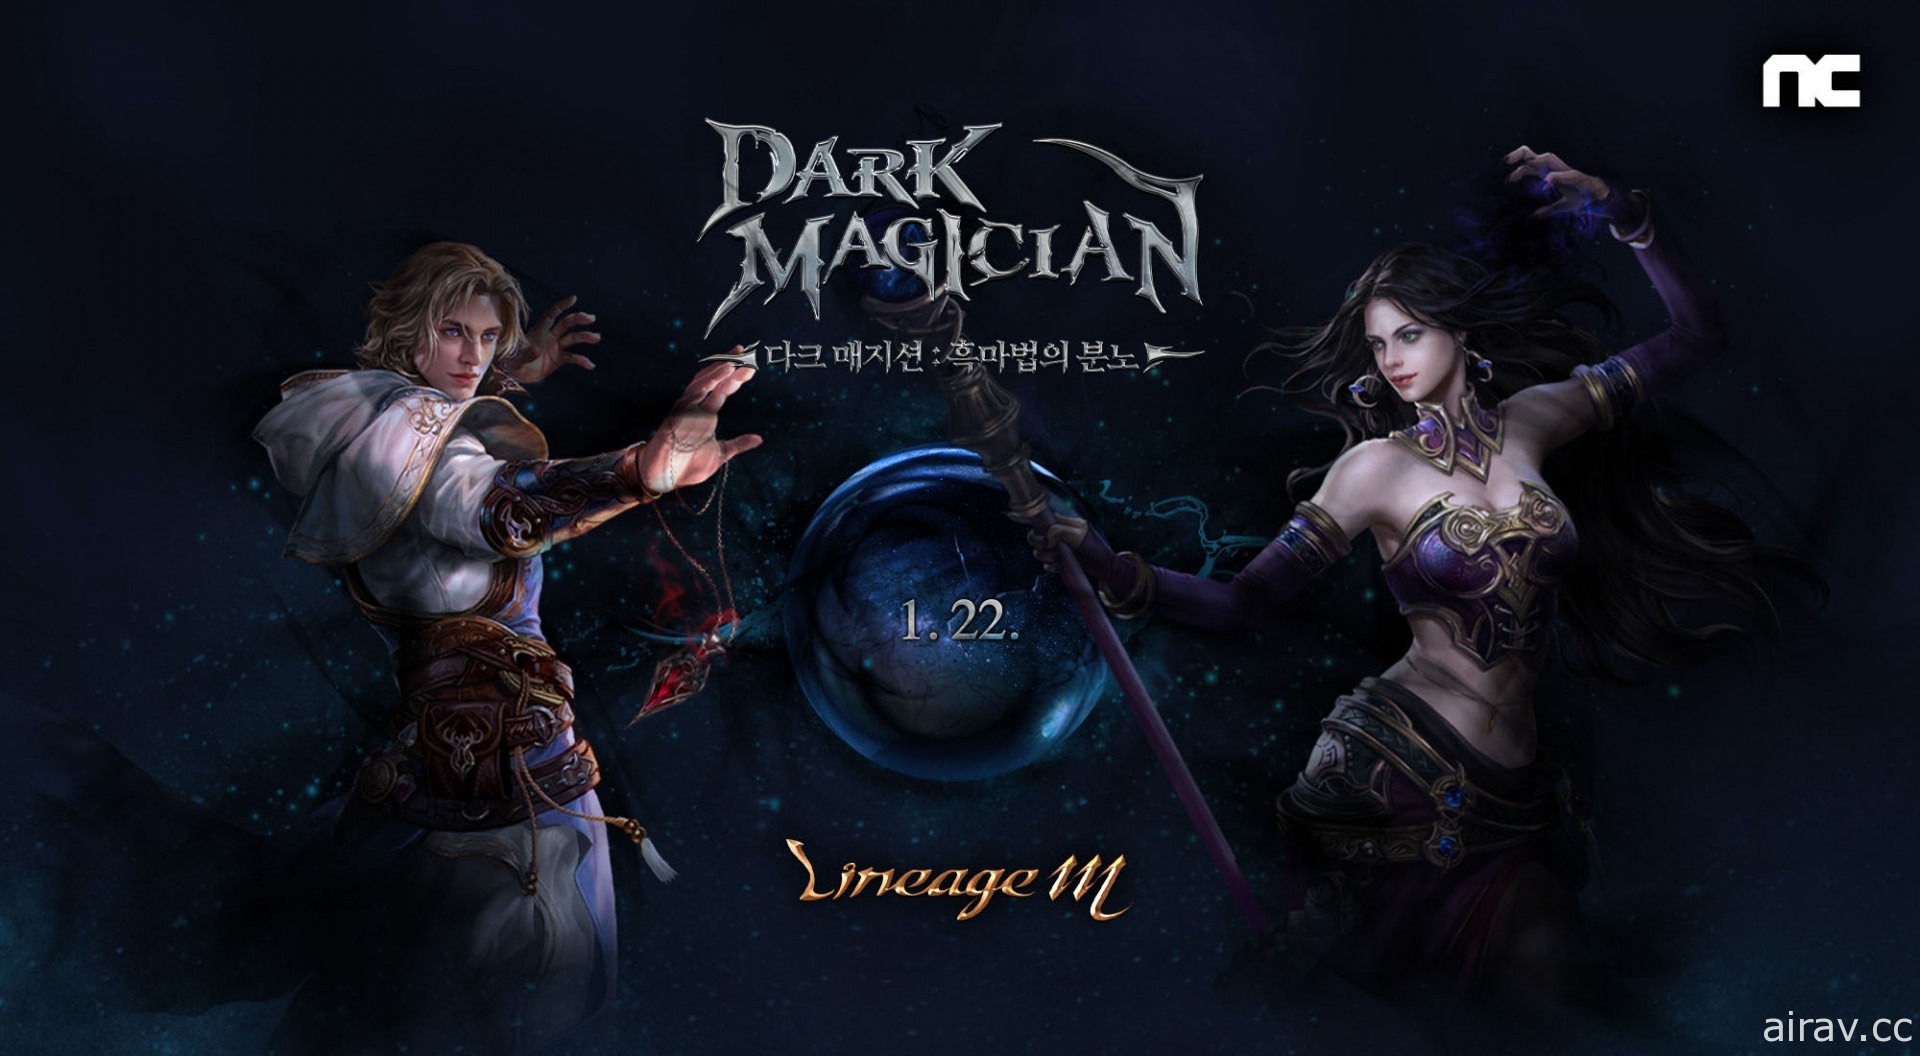 《天堂 M》韓版推出大型更新「暗黑魔法師 Dark Magician）」預先登錄活動